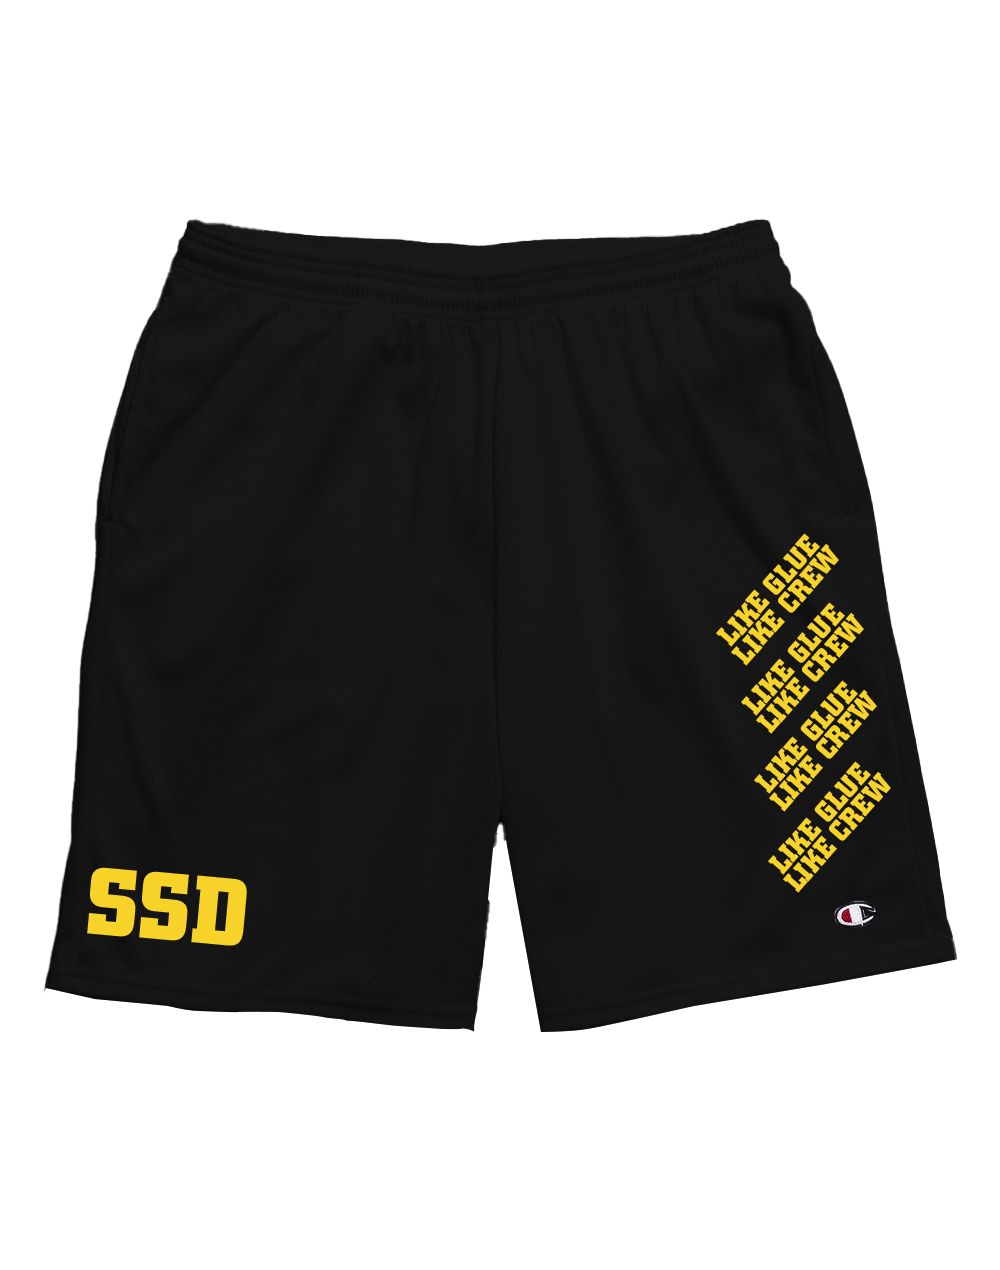 SSD Like Glue Champion Shorts